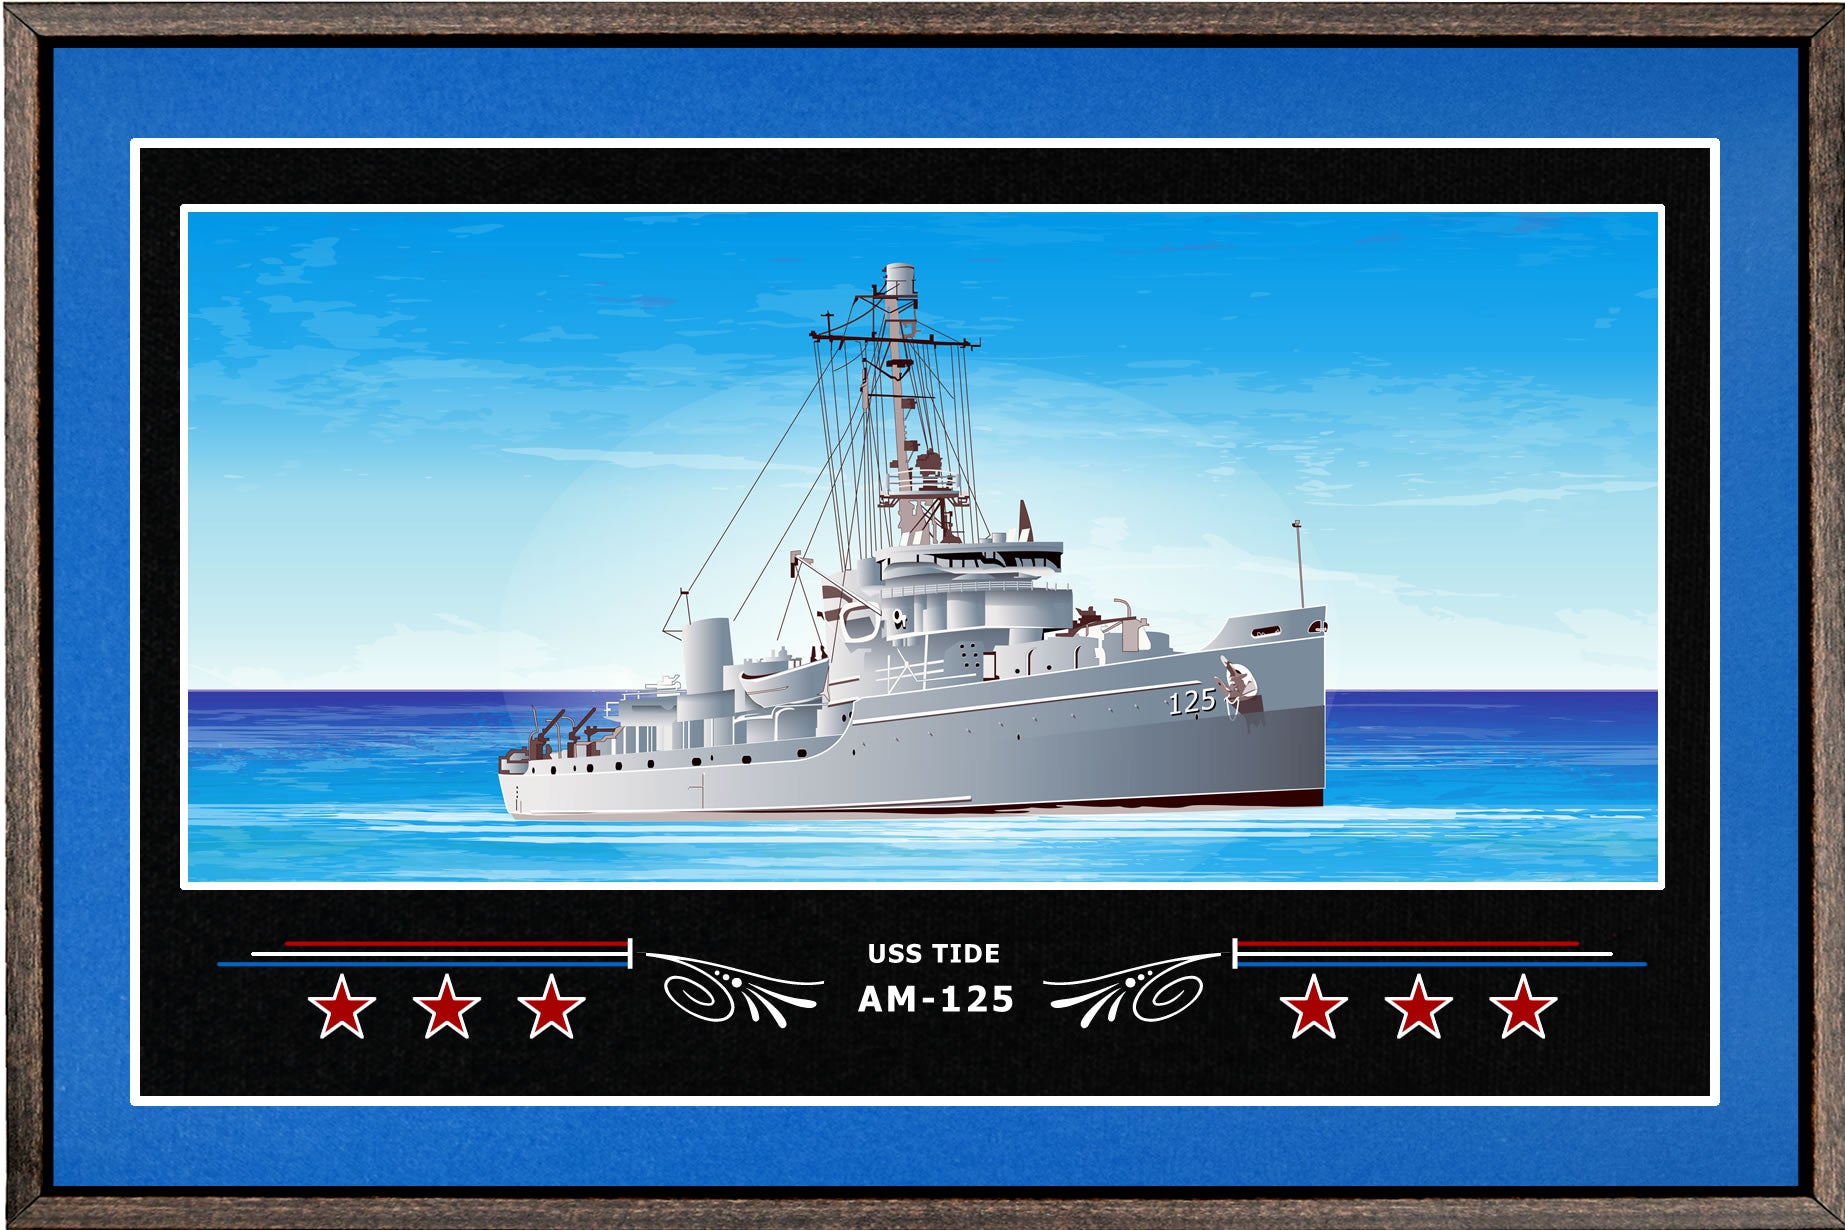 USS TIDE AM 125 BOX FRAMED CANVAS ART BLUE